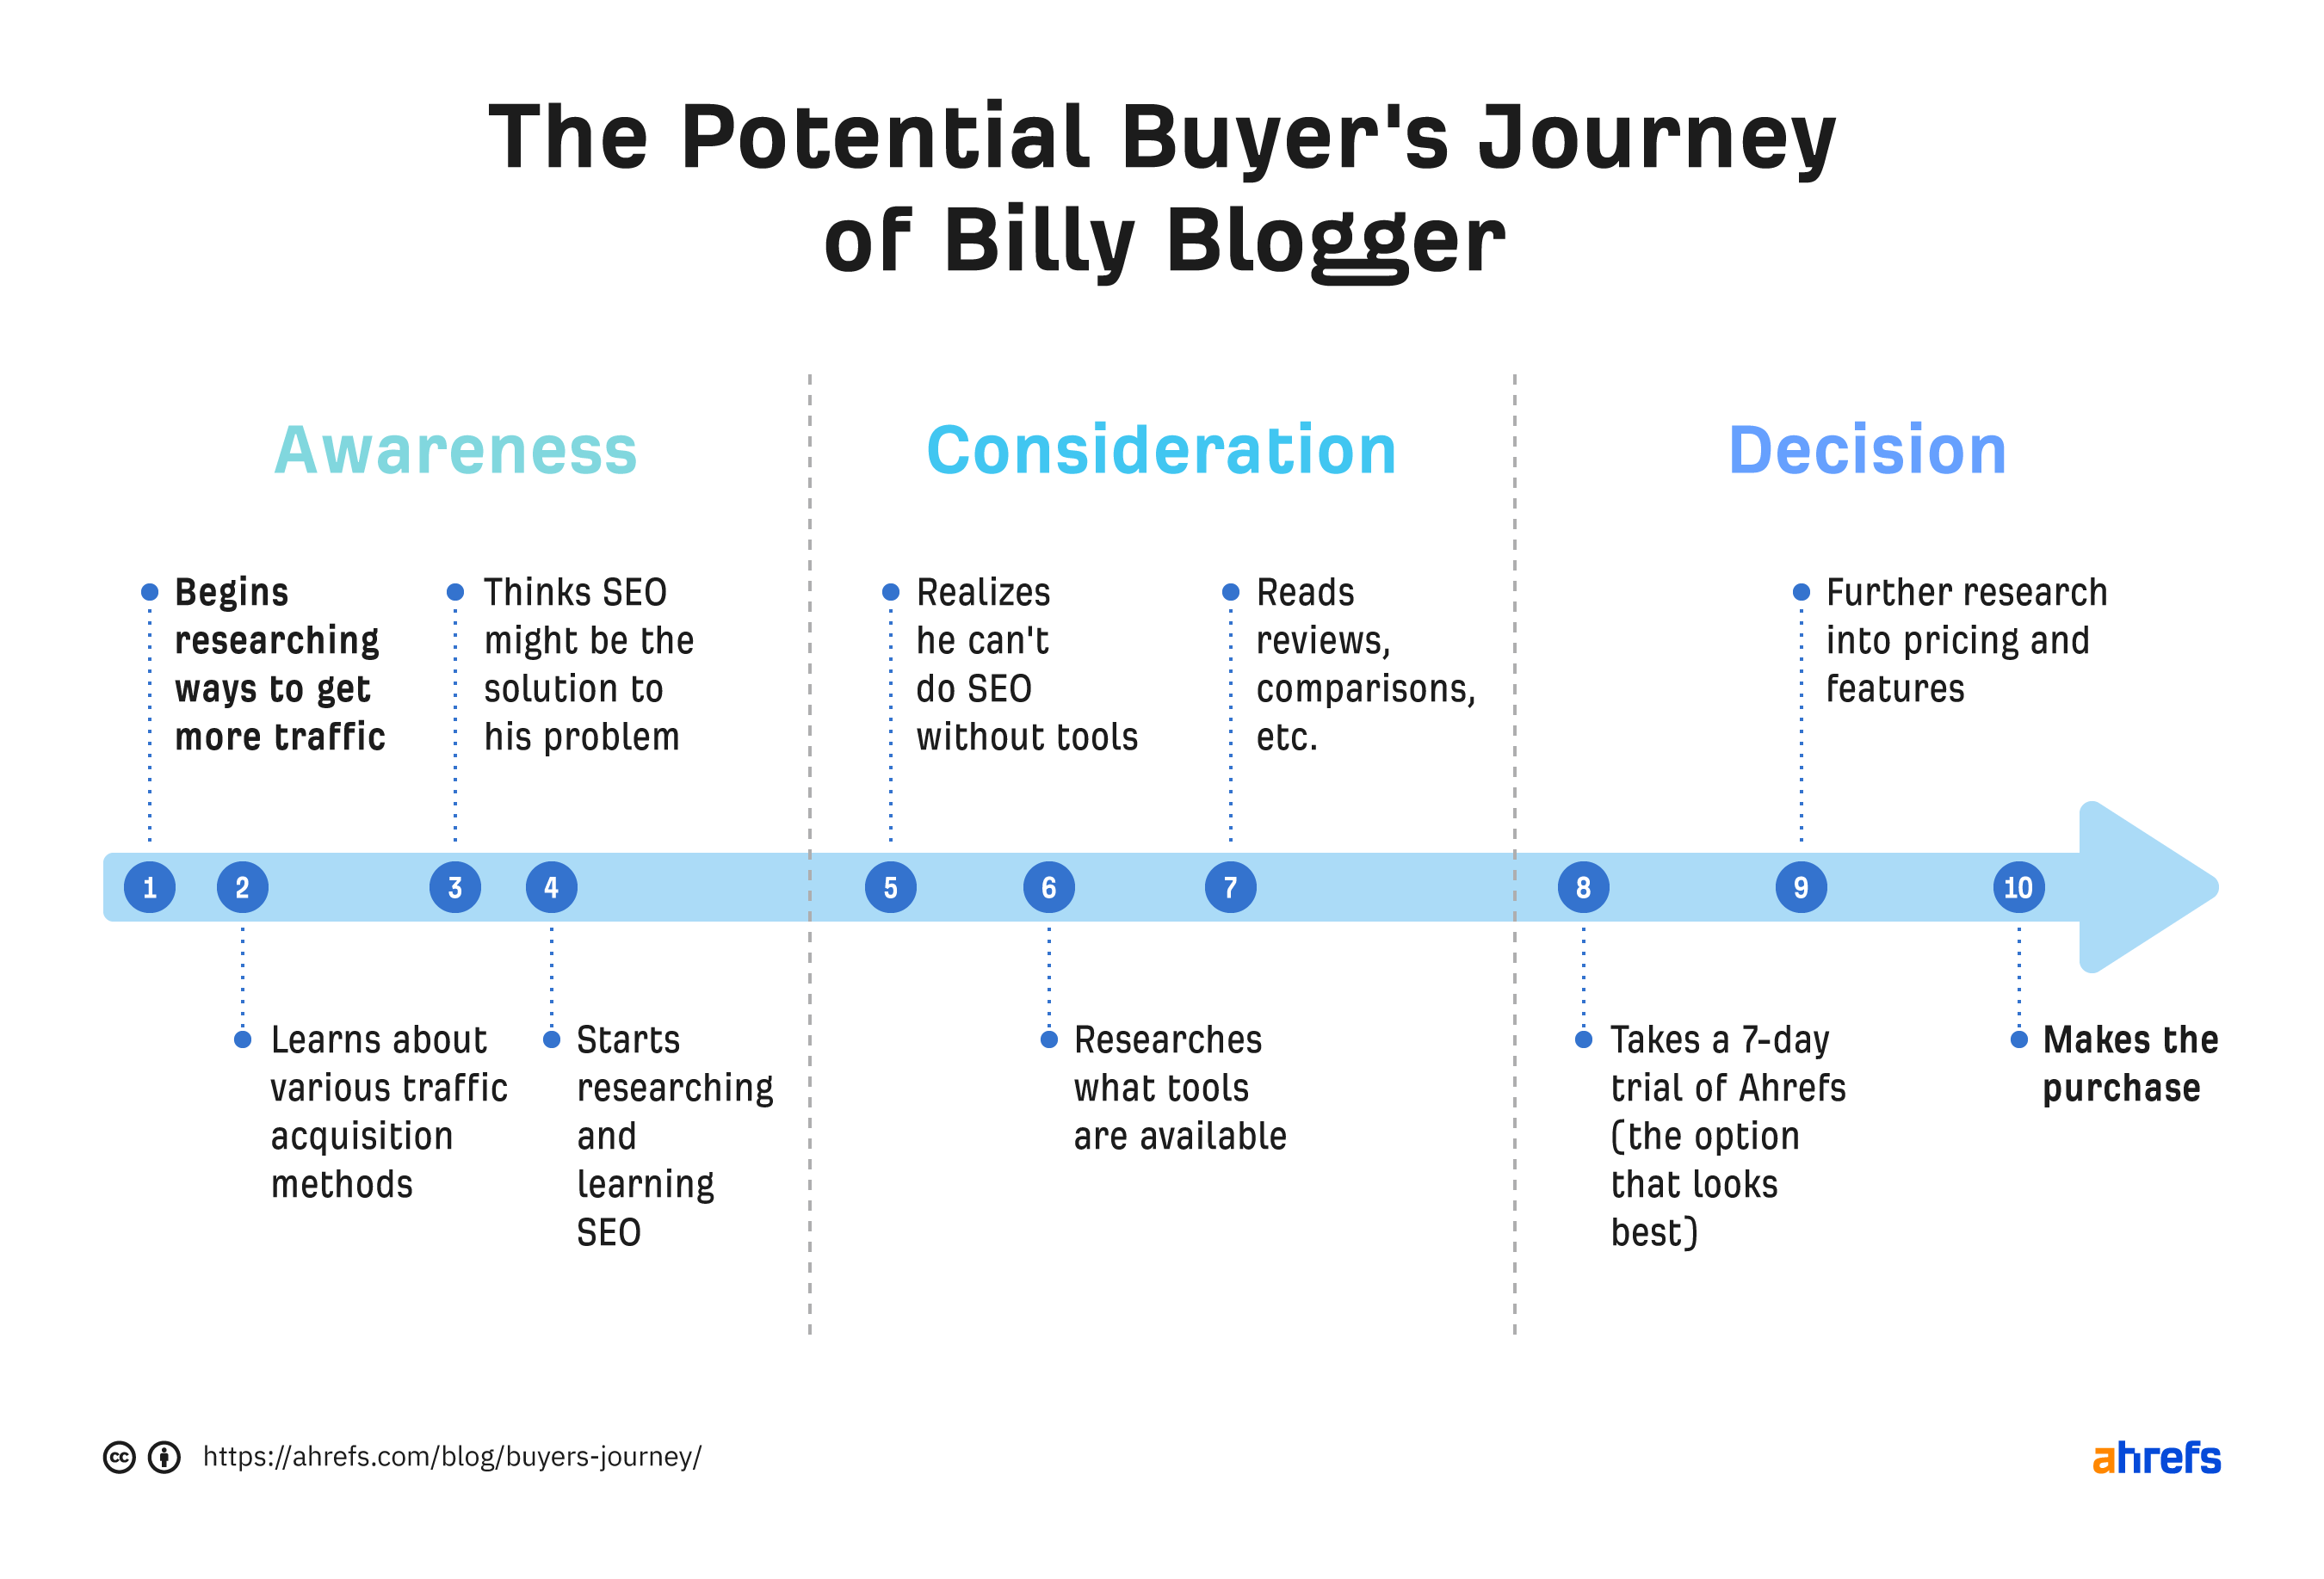 Cronología que muestra el camino de Billy hacia un posible comprador.  Basado en los 3 pasos mencionados anteriormente 